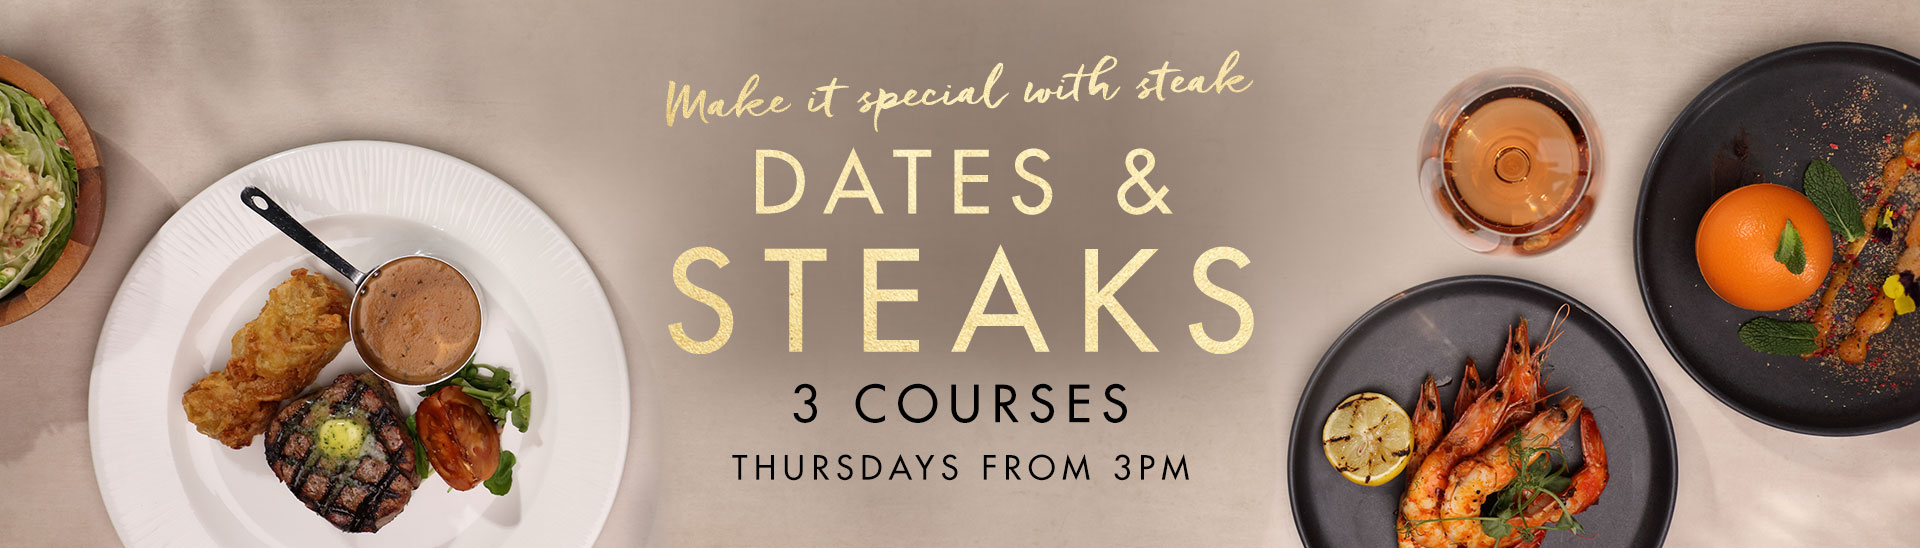 Dates & Steaks at Miller & Carter Grantham